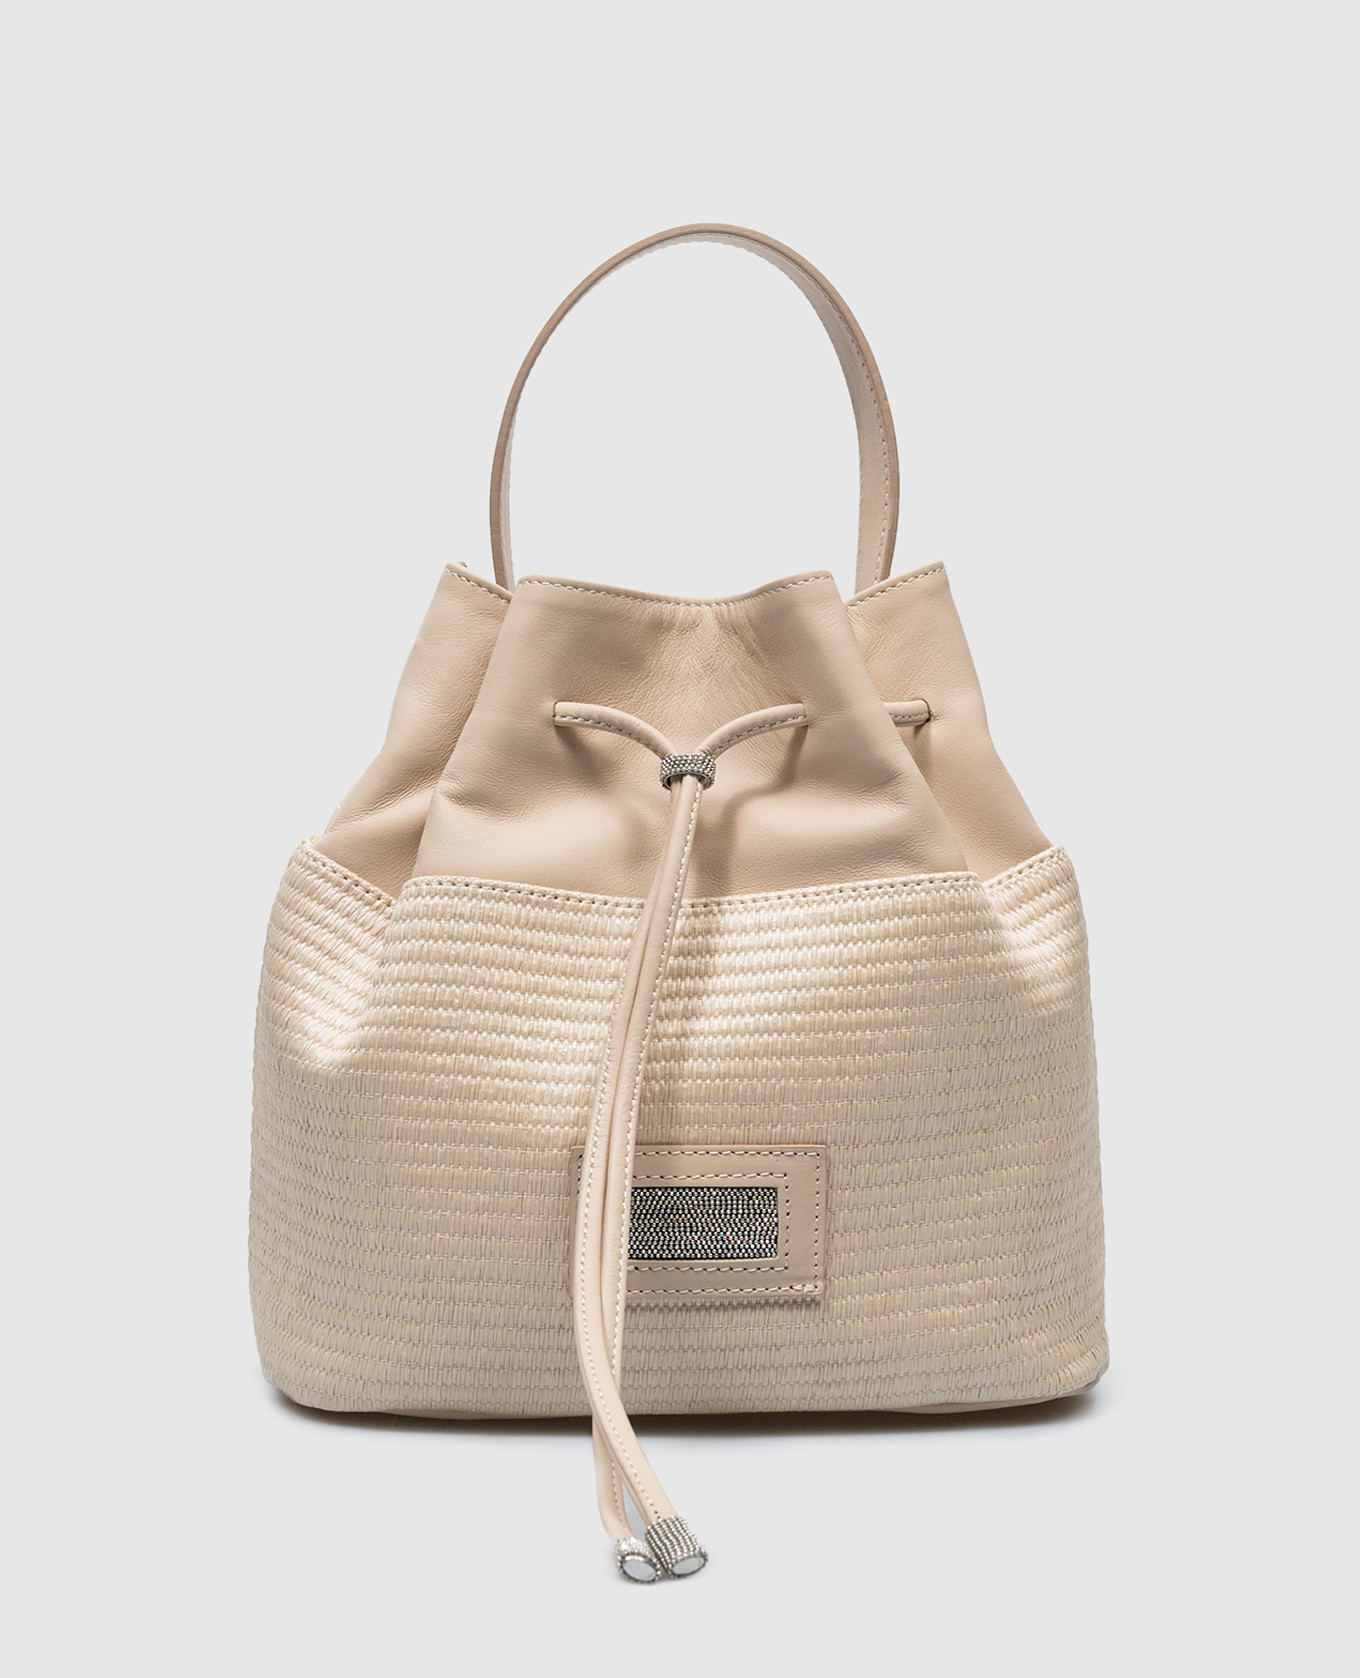 Beige purse bag with monil chain